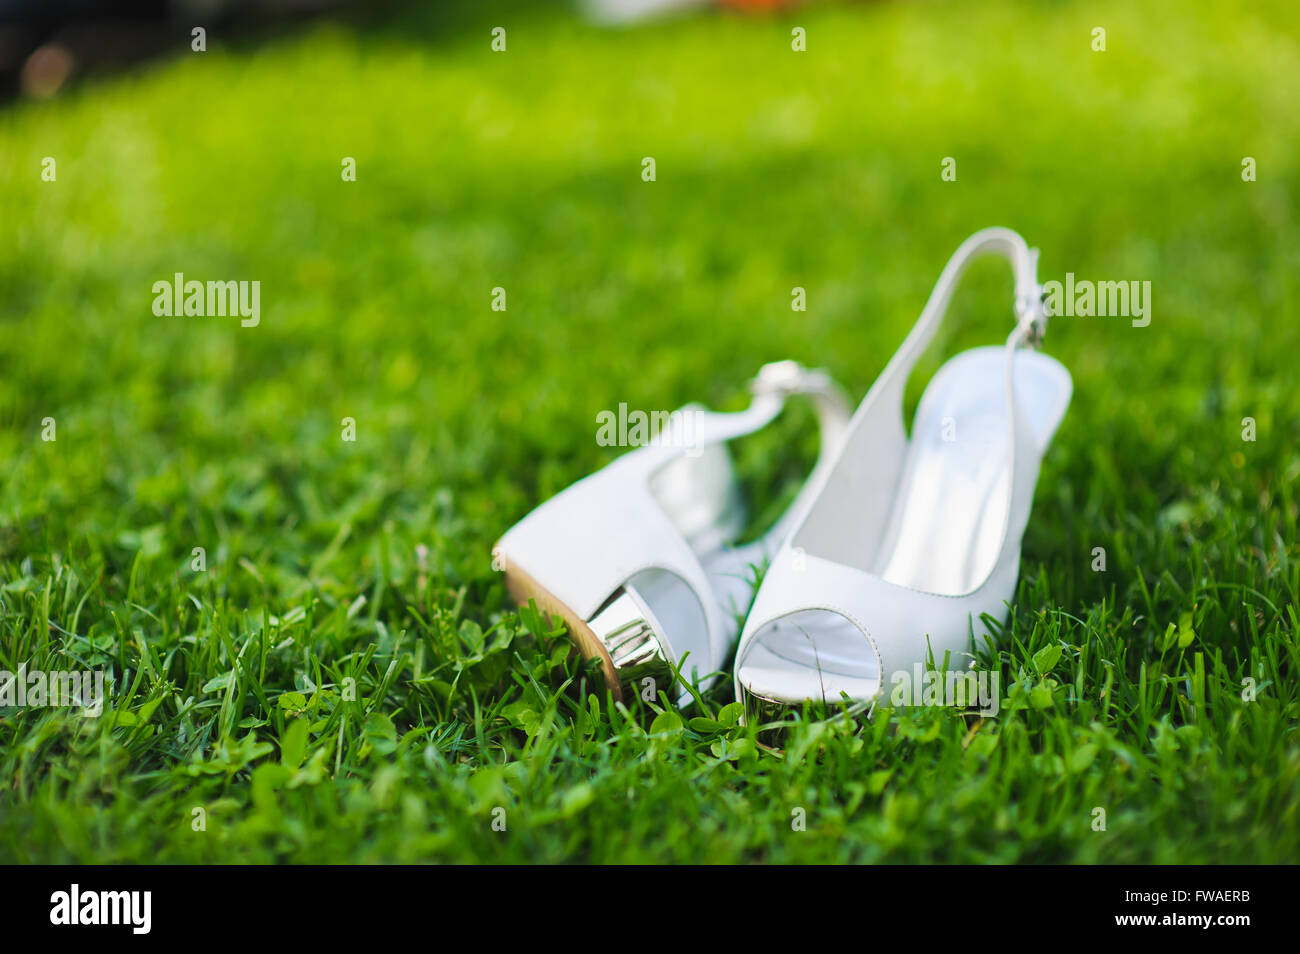 weiße Schuhe auf grünen Rasen weiße Brautschuhe auf grünen Rasen.  Hochzeitsschuhe Stockfotografie - Alamy